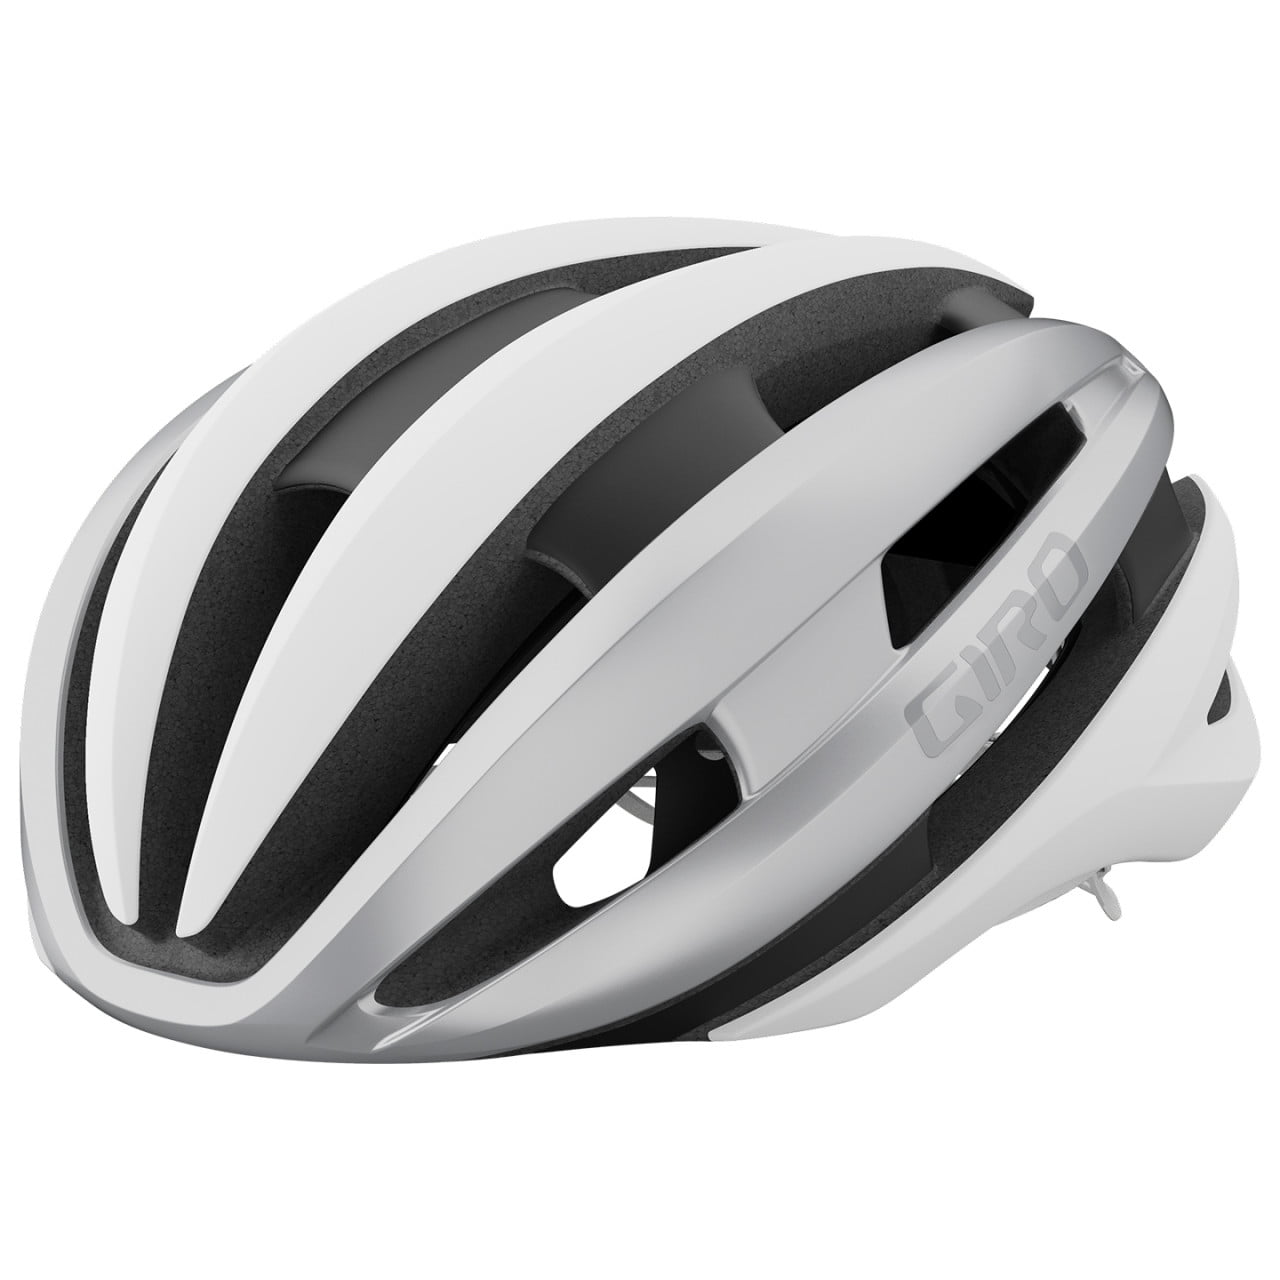 Synthe Mips II Road Bike Helmet